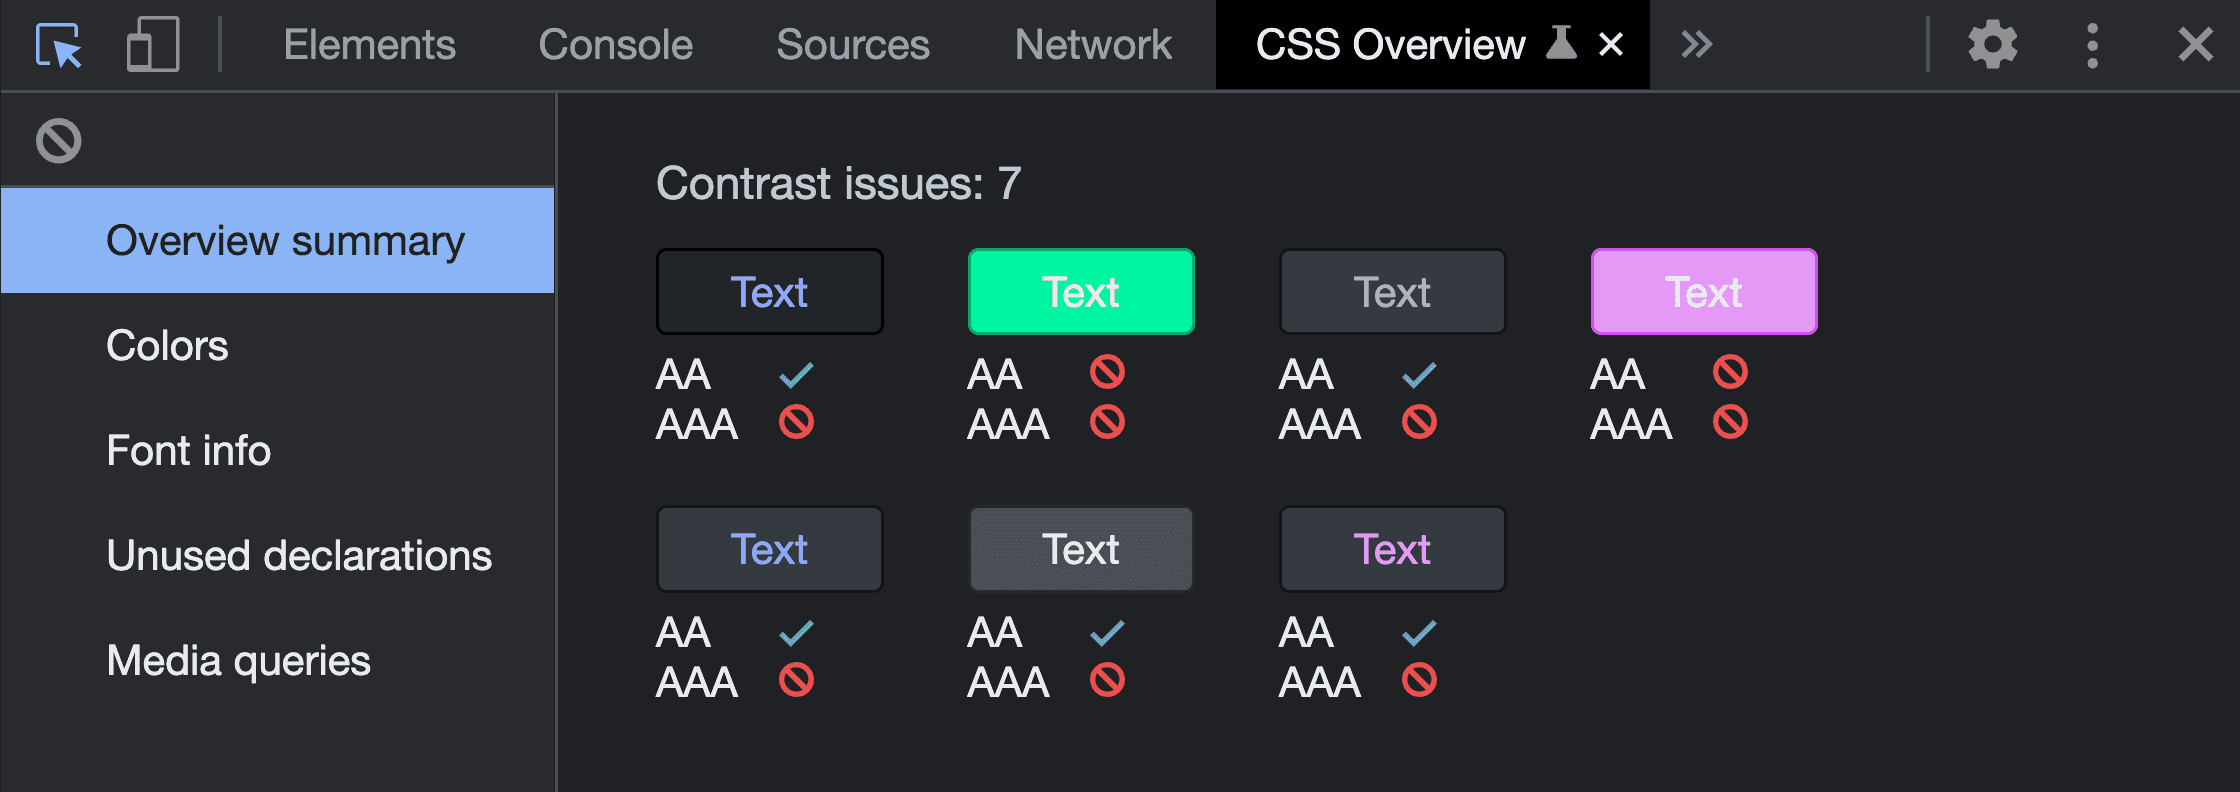 Screenshot der Übersichtsübersicht nach Ausführung des Erfassungstools für die CSS-Übersicht. Sie zeigt 7 Kontrastprobleme und zeigt die erkannten Farbpaare und ihre fehlgeschlagenen Ergebnisse.